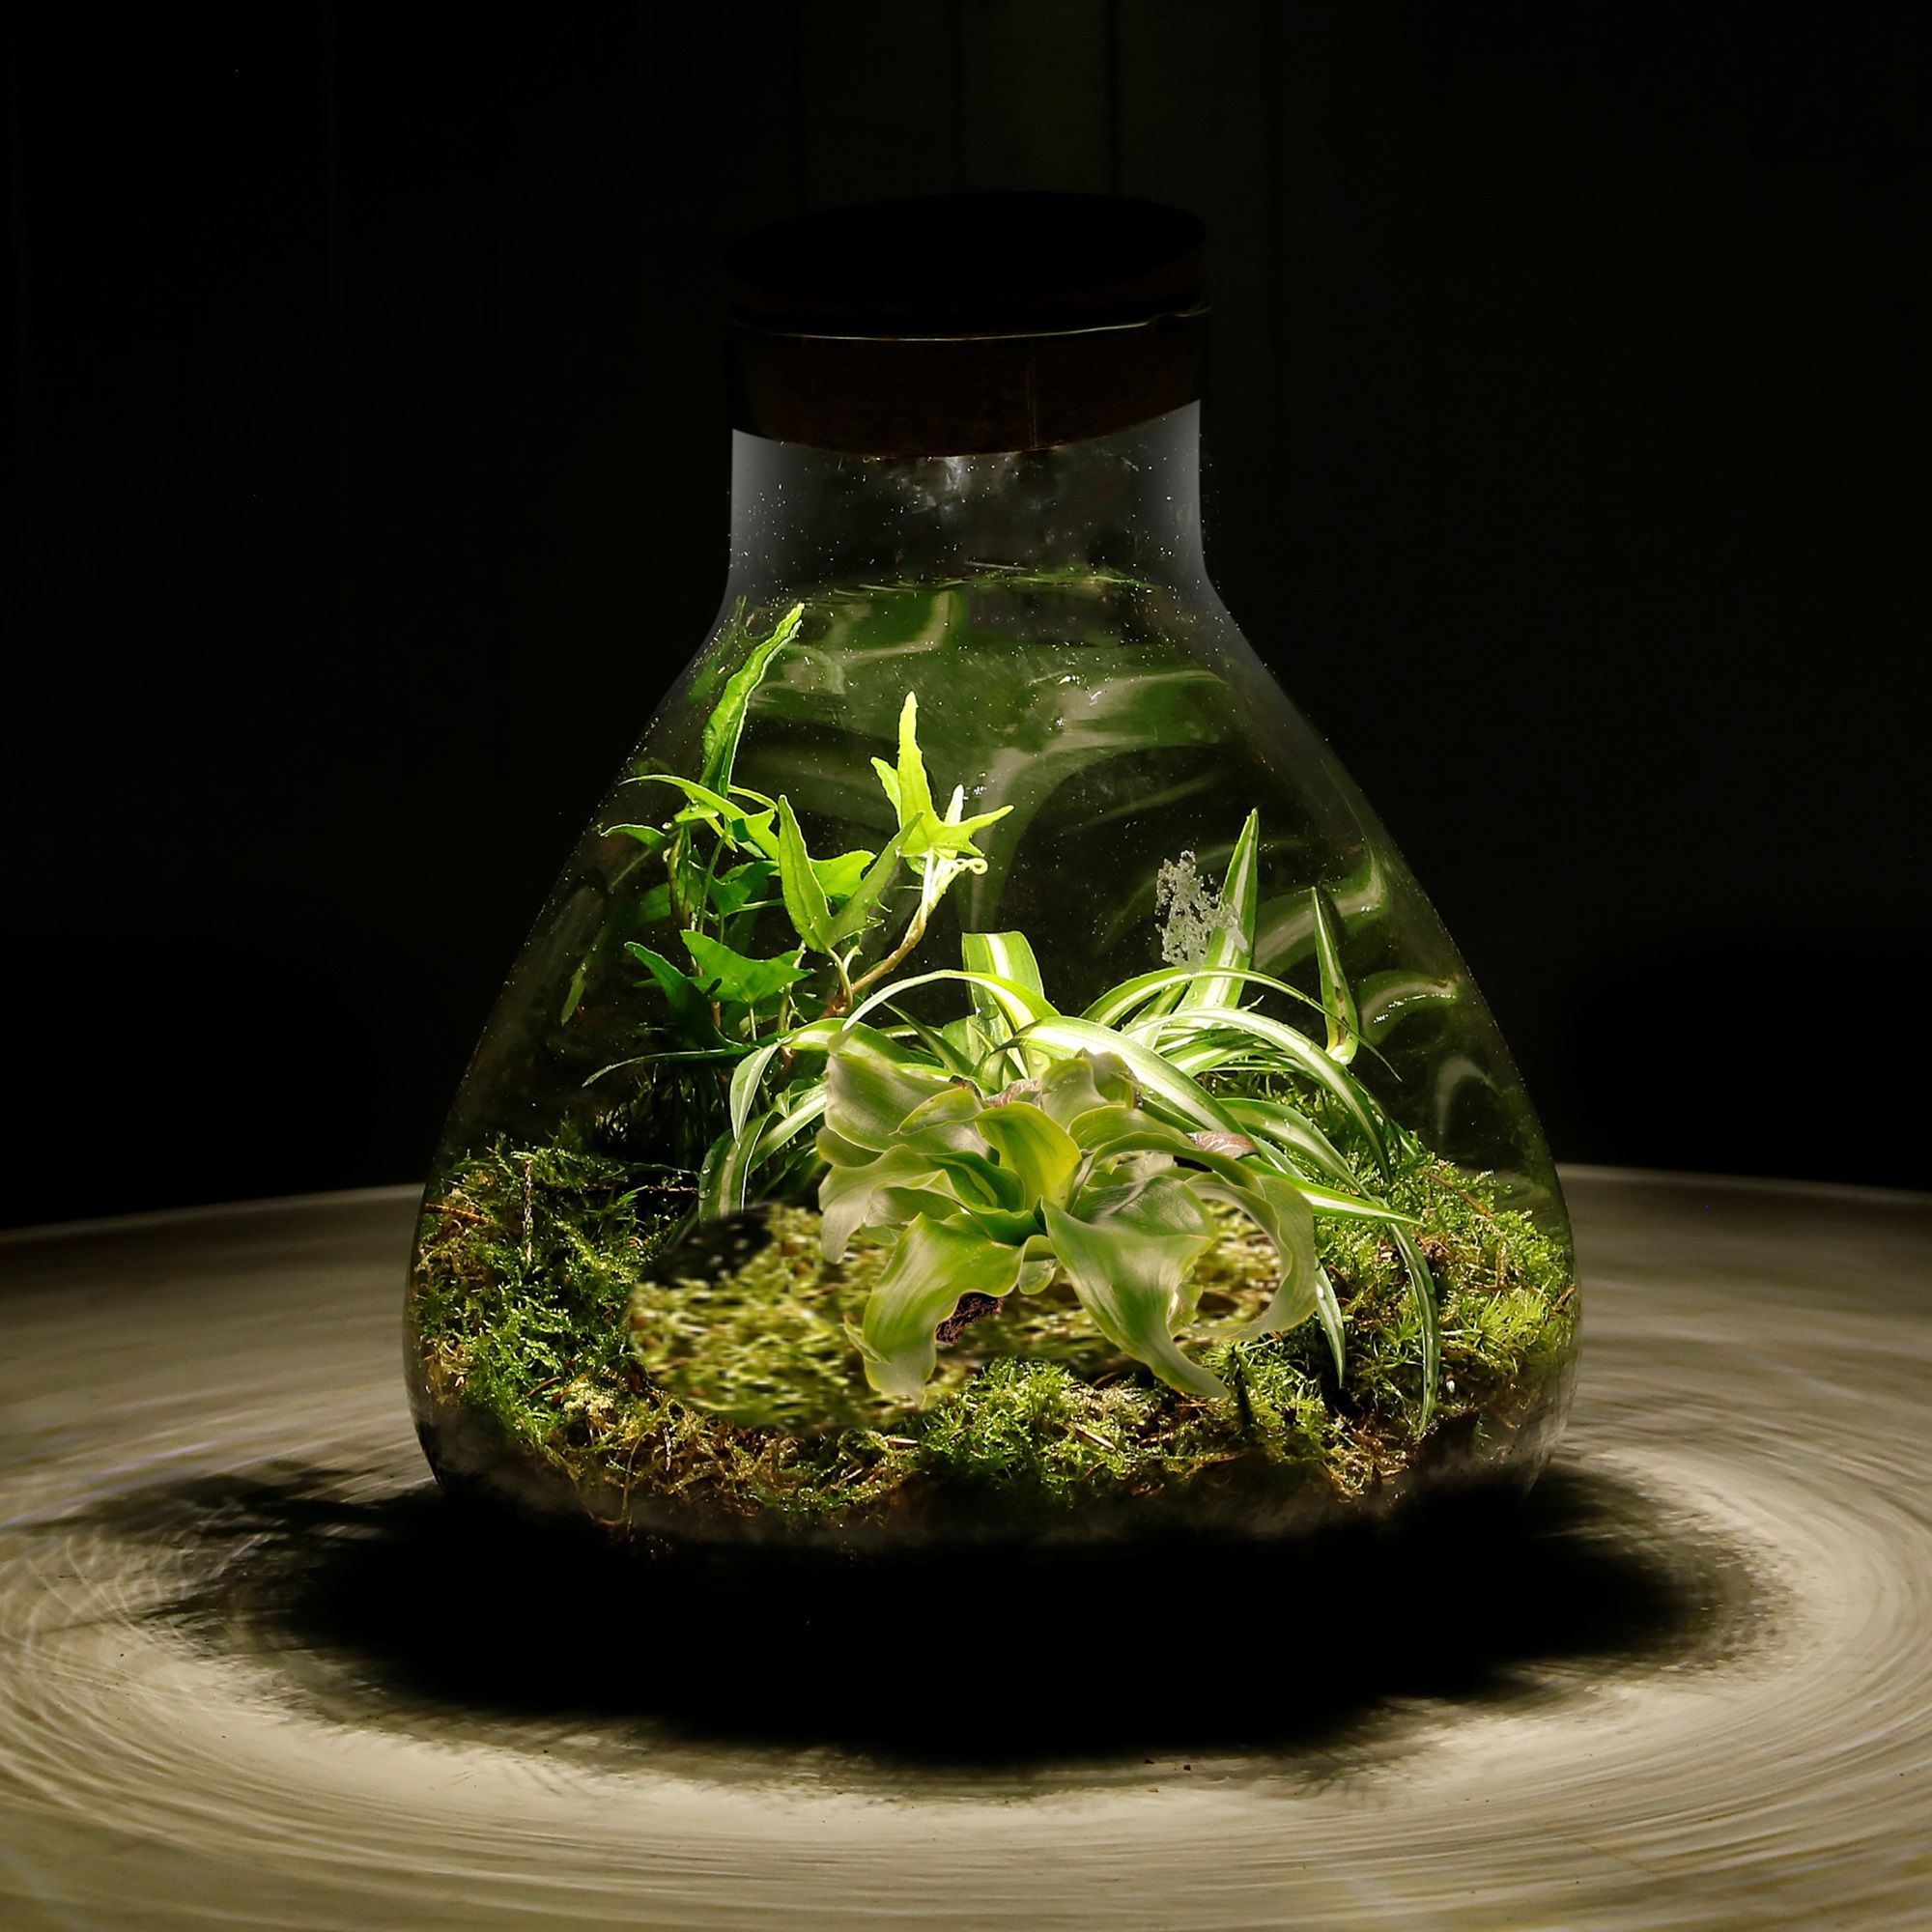 Pflanzen-im-Glas-Topf-Dschungel-Biosphäre-mit-Lampe-Piramid-2